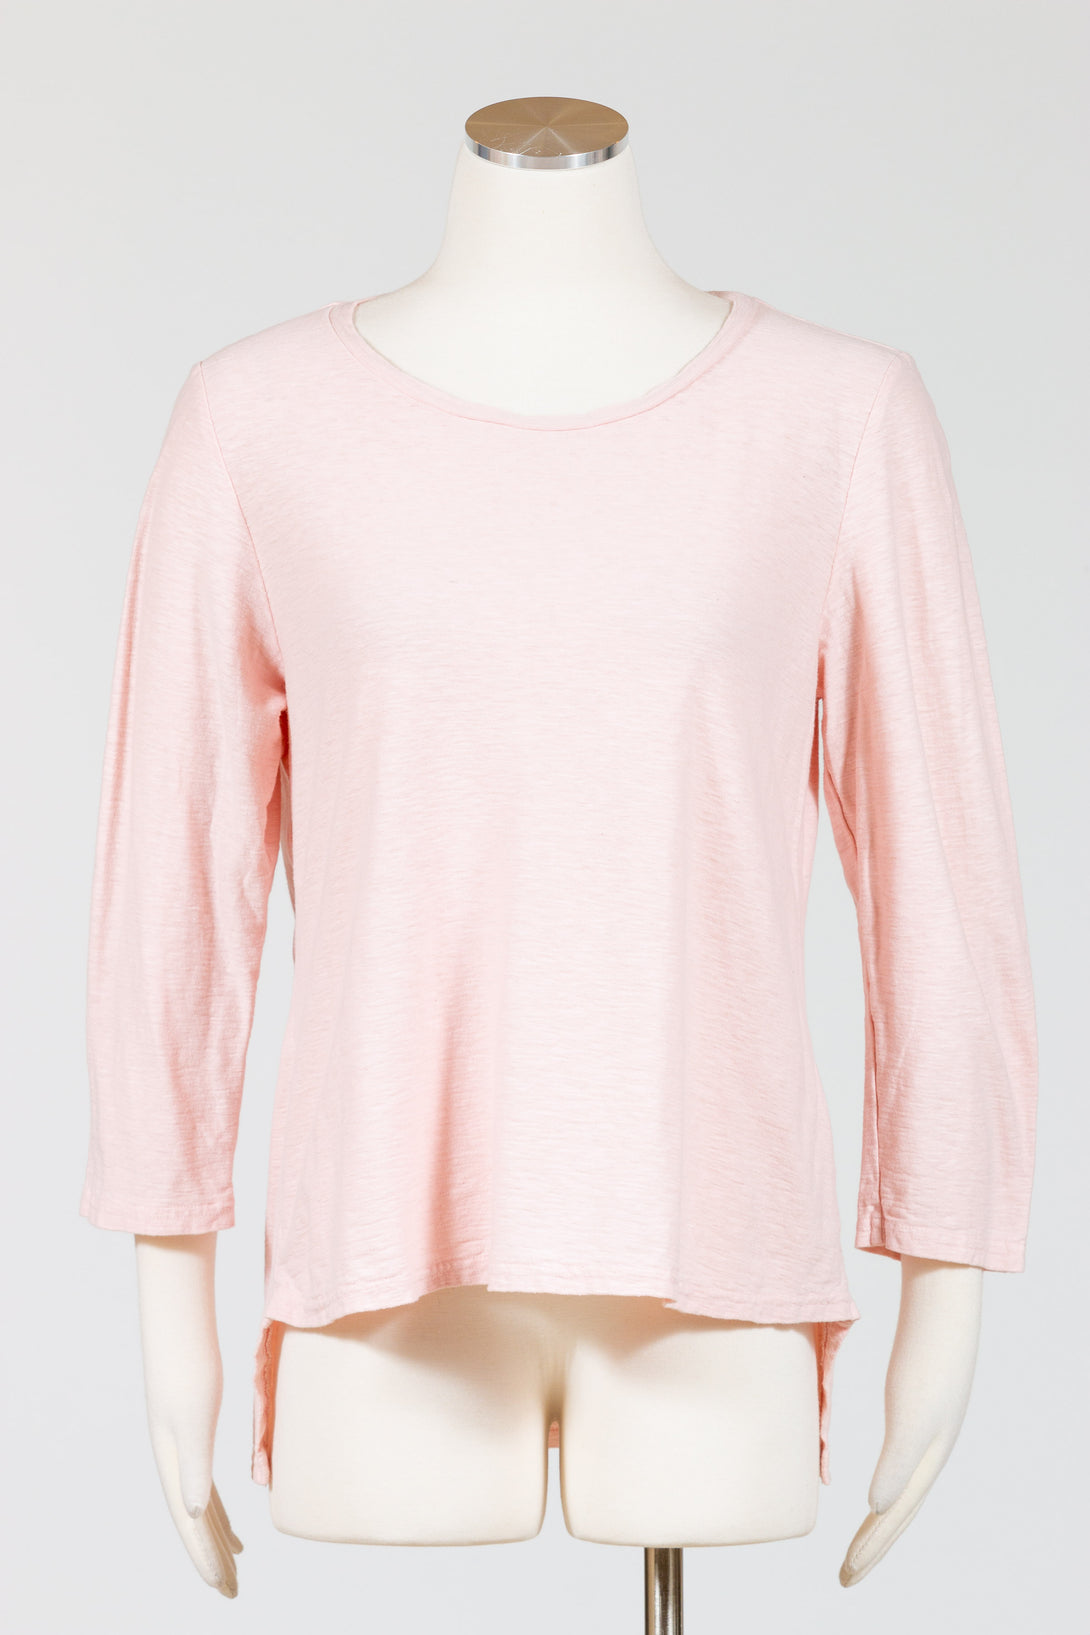 CutLoose-HiLo-Crop-Top-Cotton-Linen-Knit-Rosalie-Pink-Blush